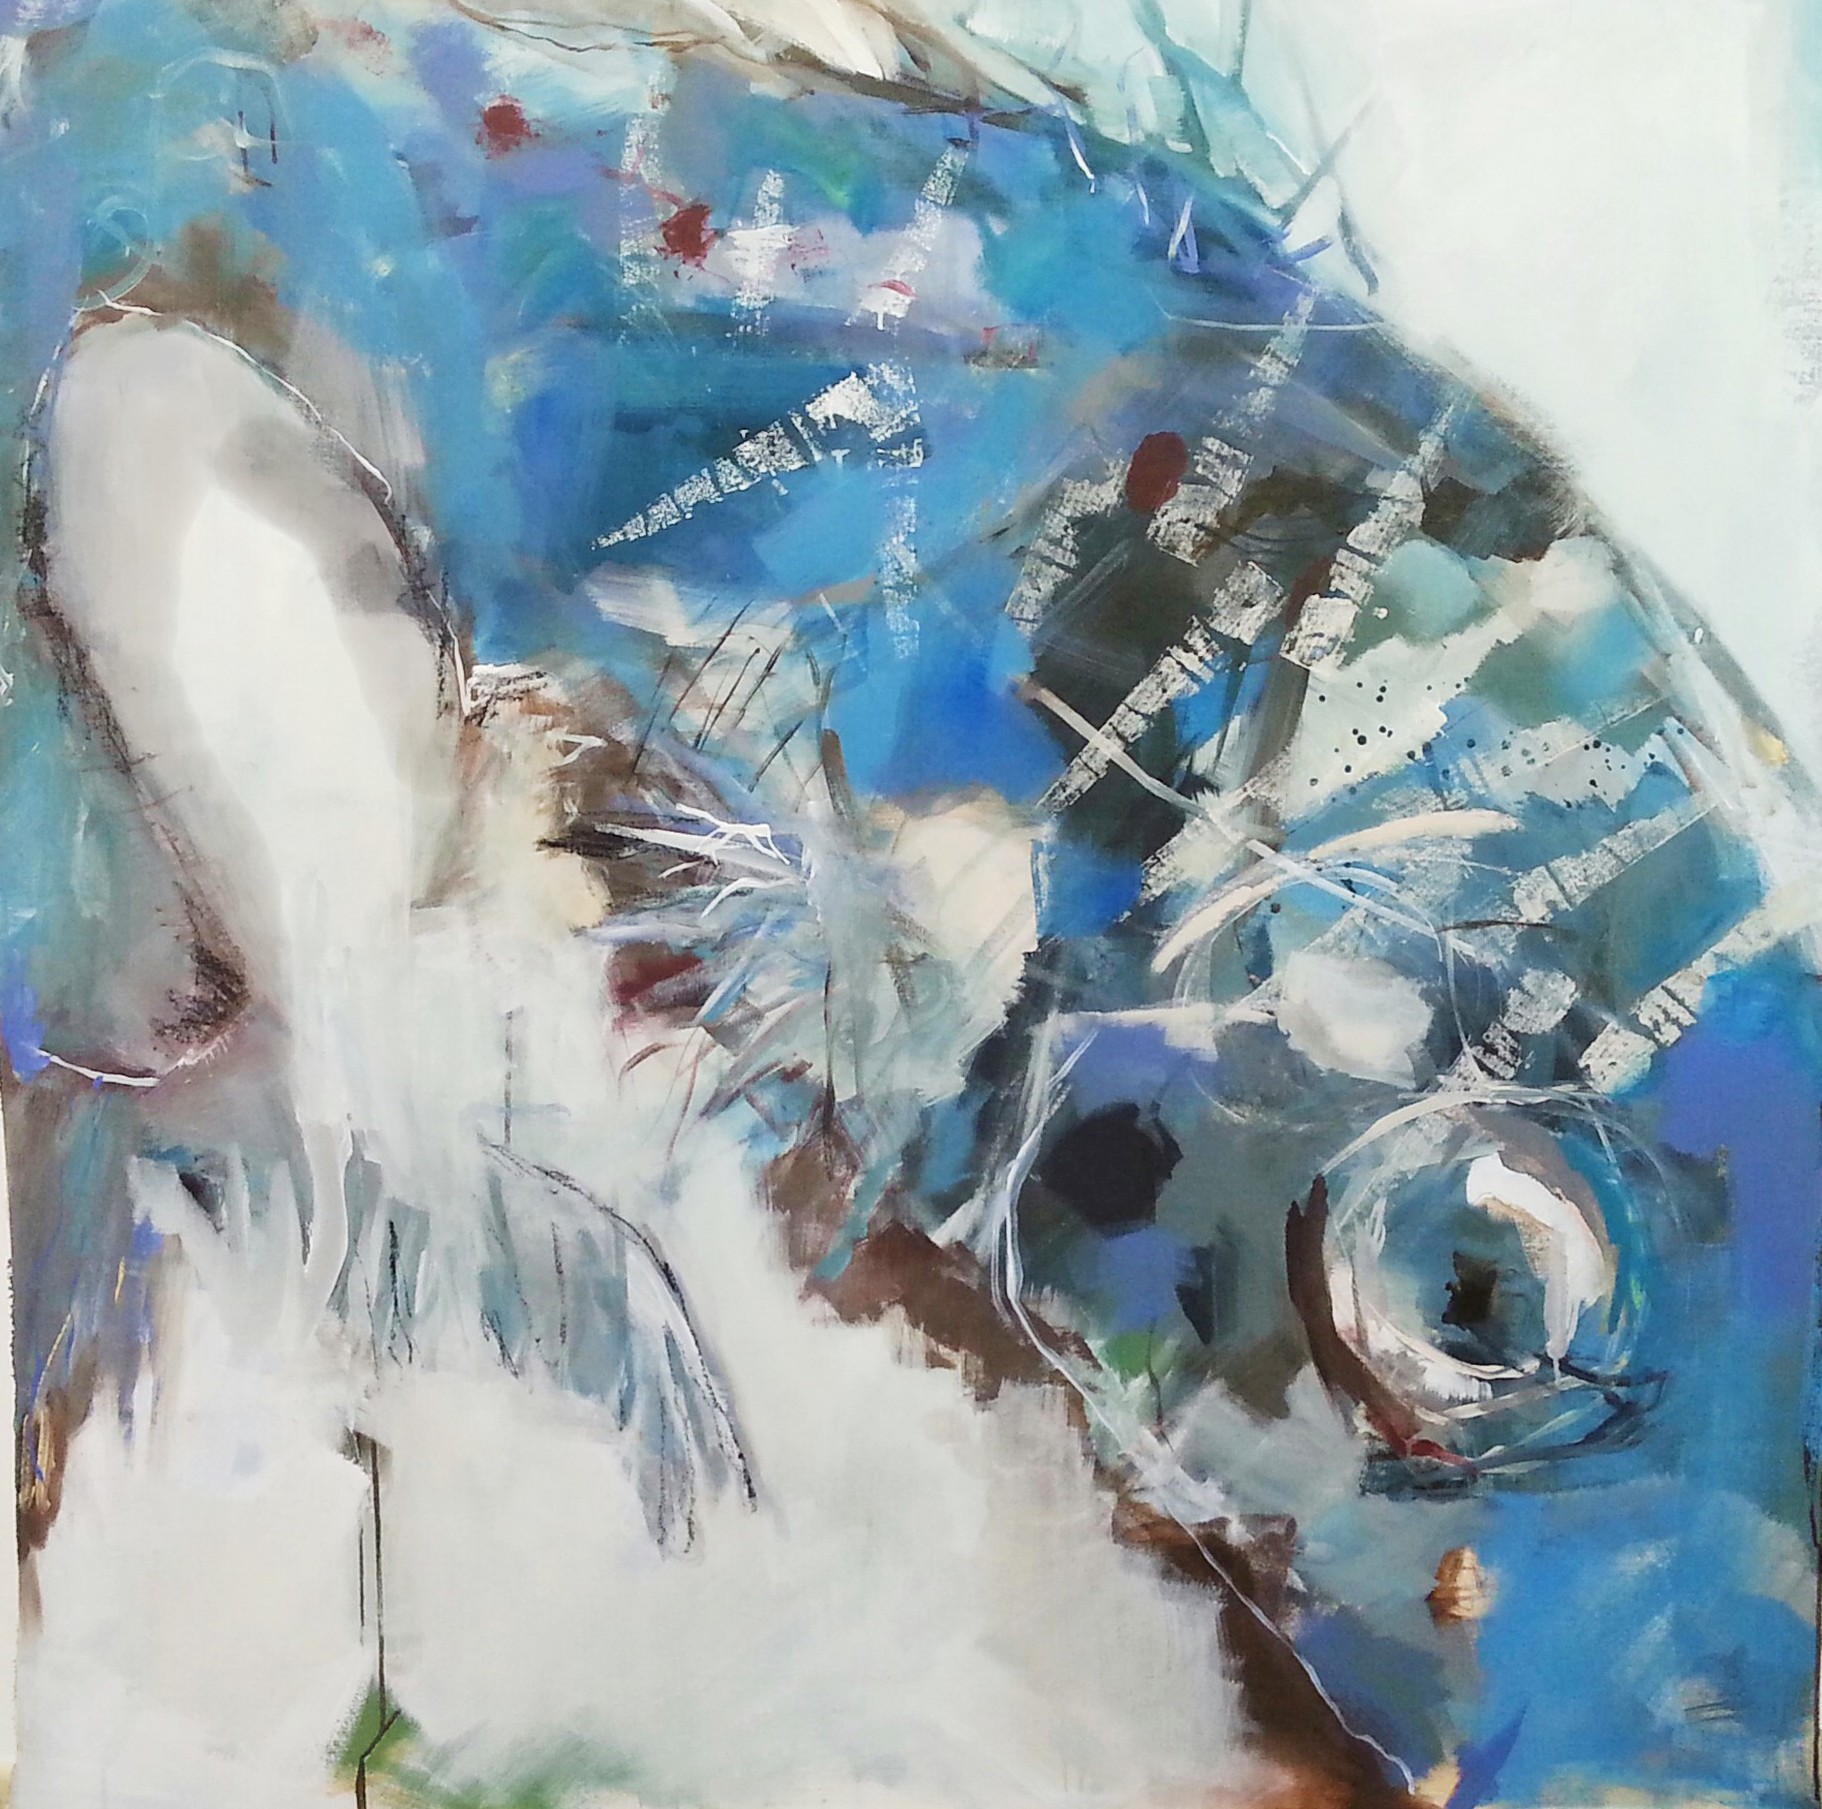 requiem für einen fisch -  acryl auf leinwand - 150x150 - 2015